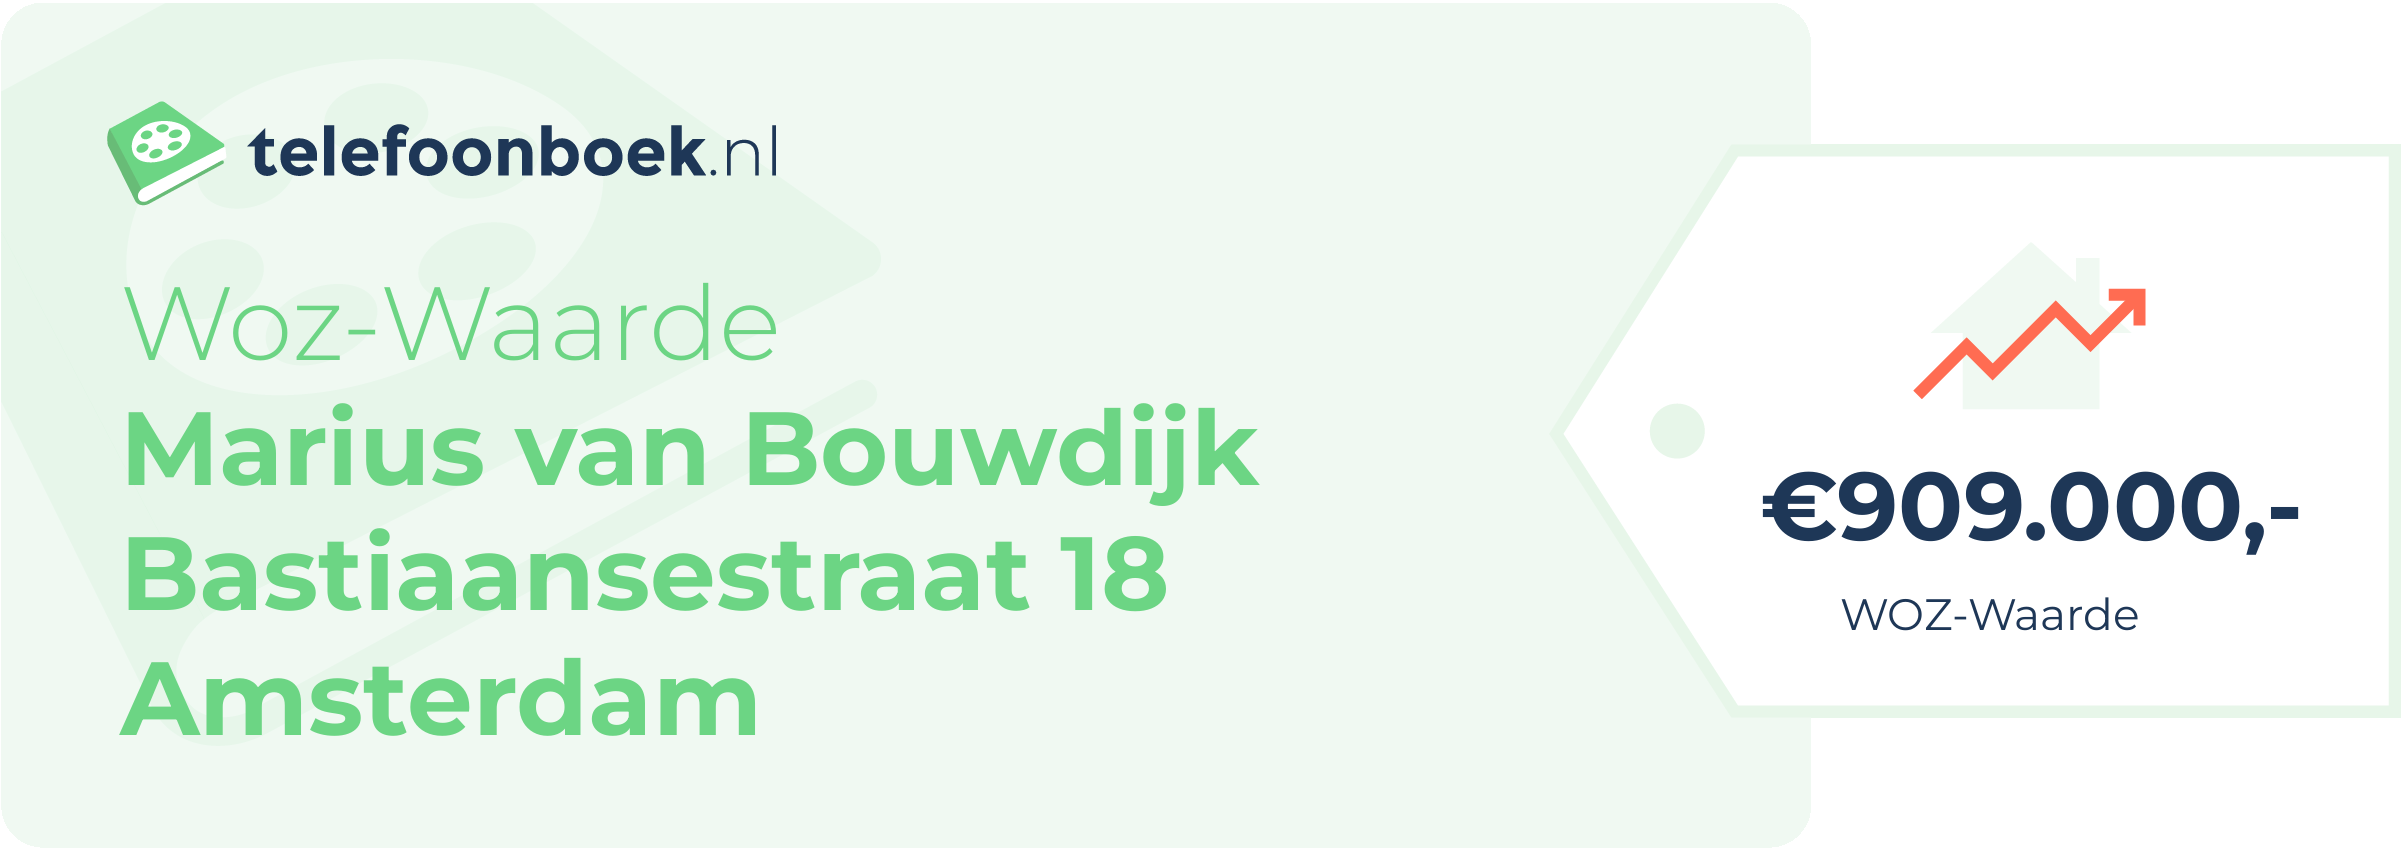 WOZ-waarde Marius Van Bouwdijk Bastiaansestraat 18 Amsterdam